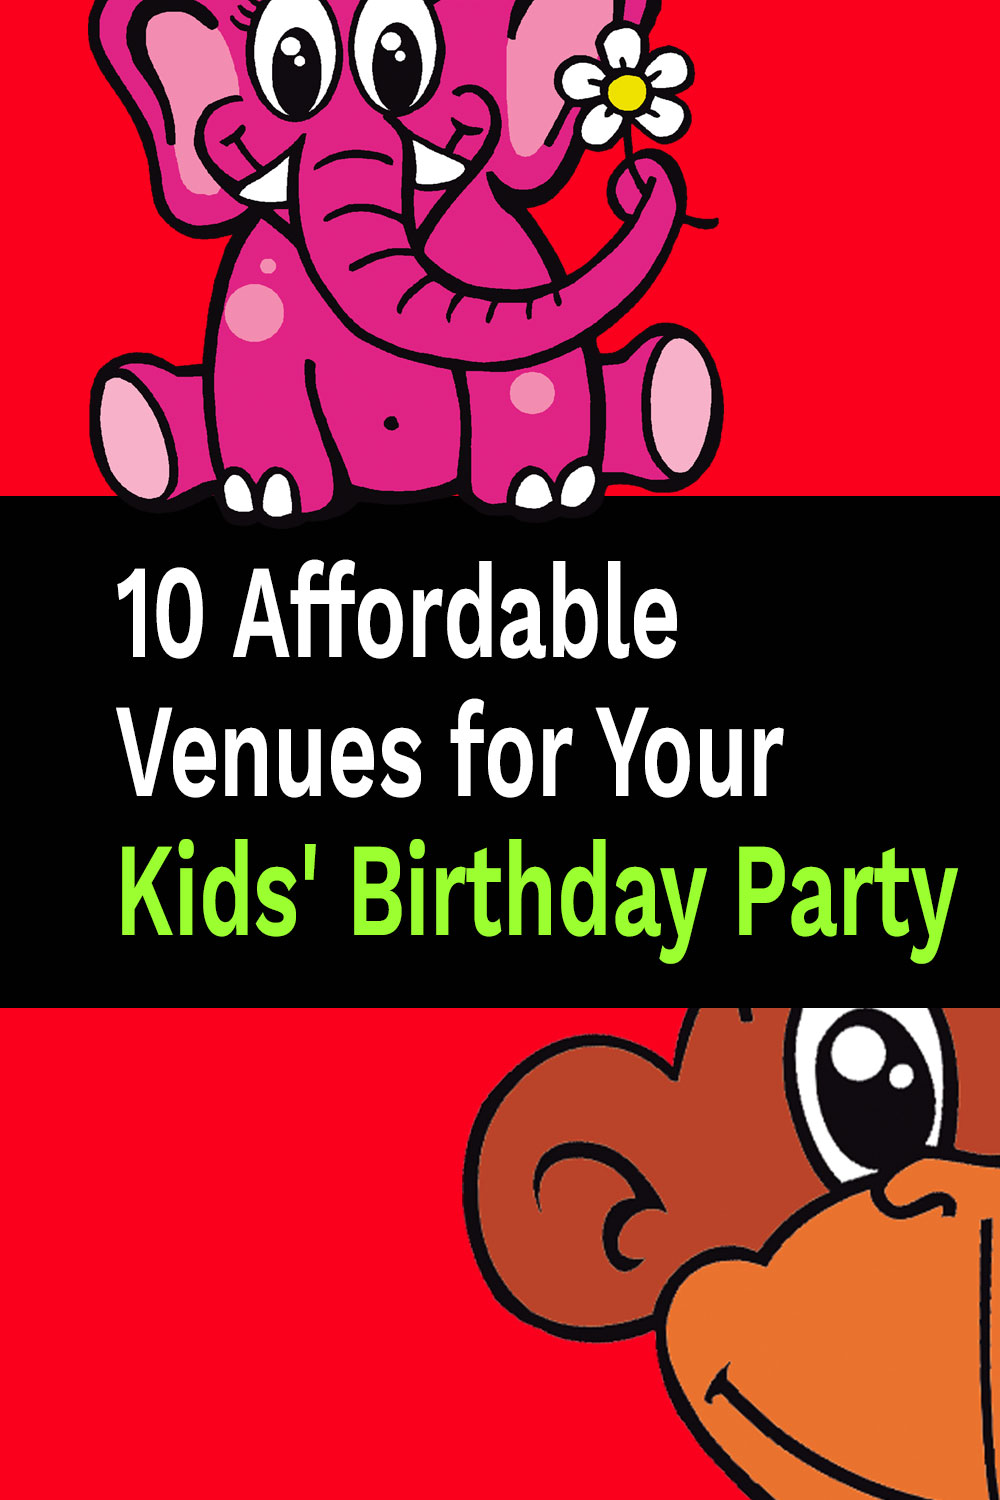 10 luoghi a prezzi accessibili per la festa di compleanno dei tuoi bambini